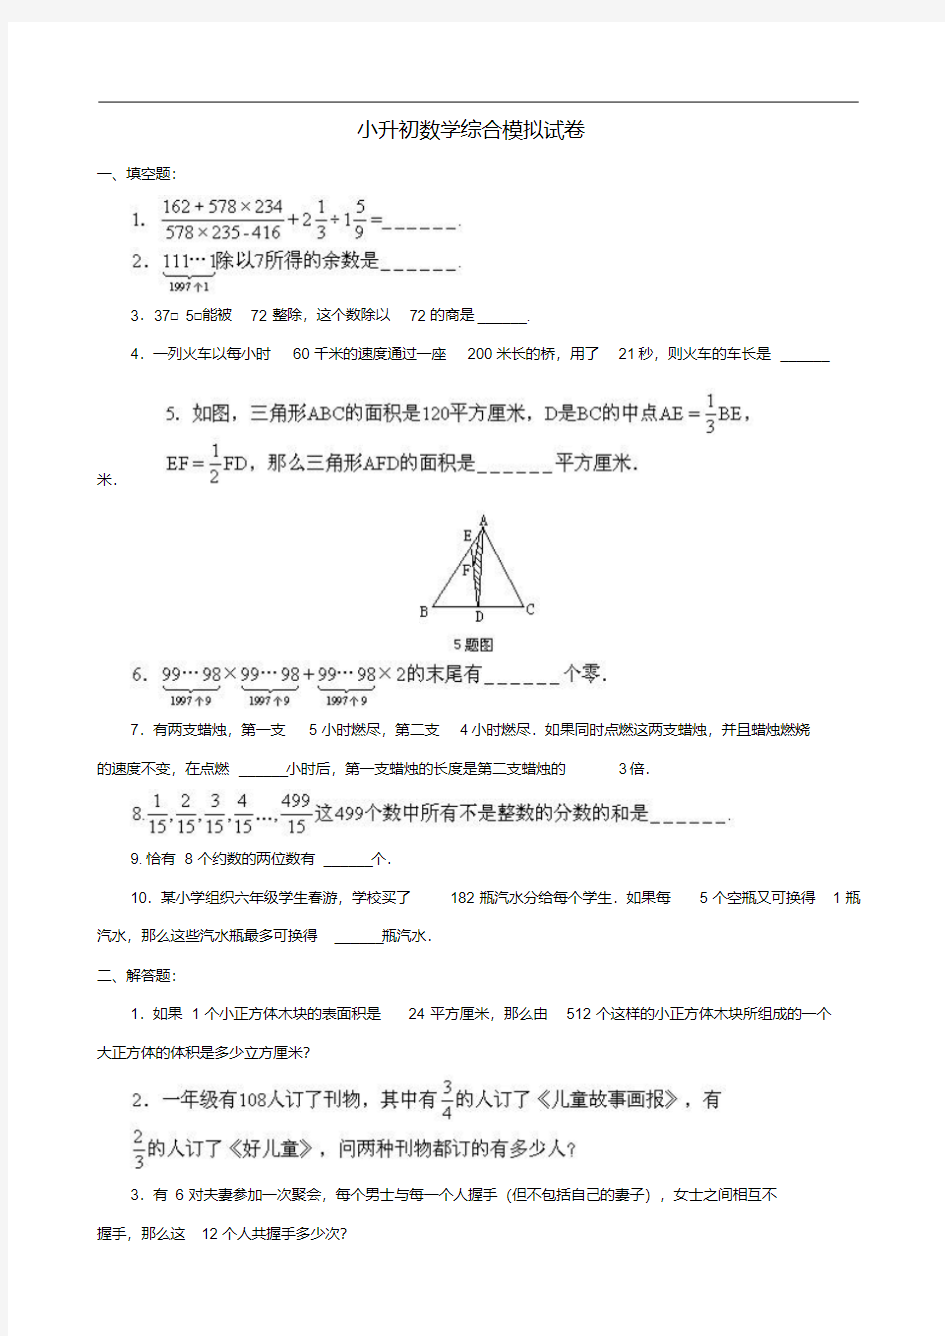 名校小升初数学真题合集(56).pdf